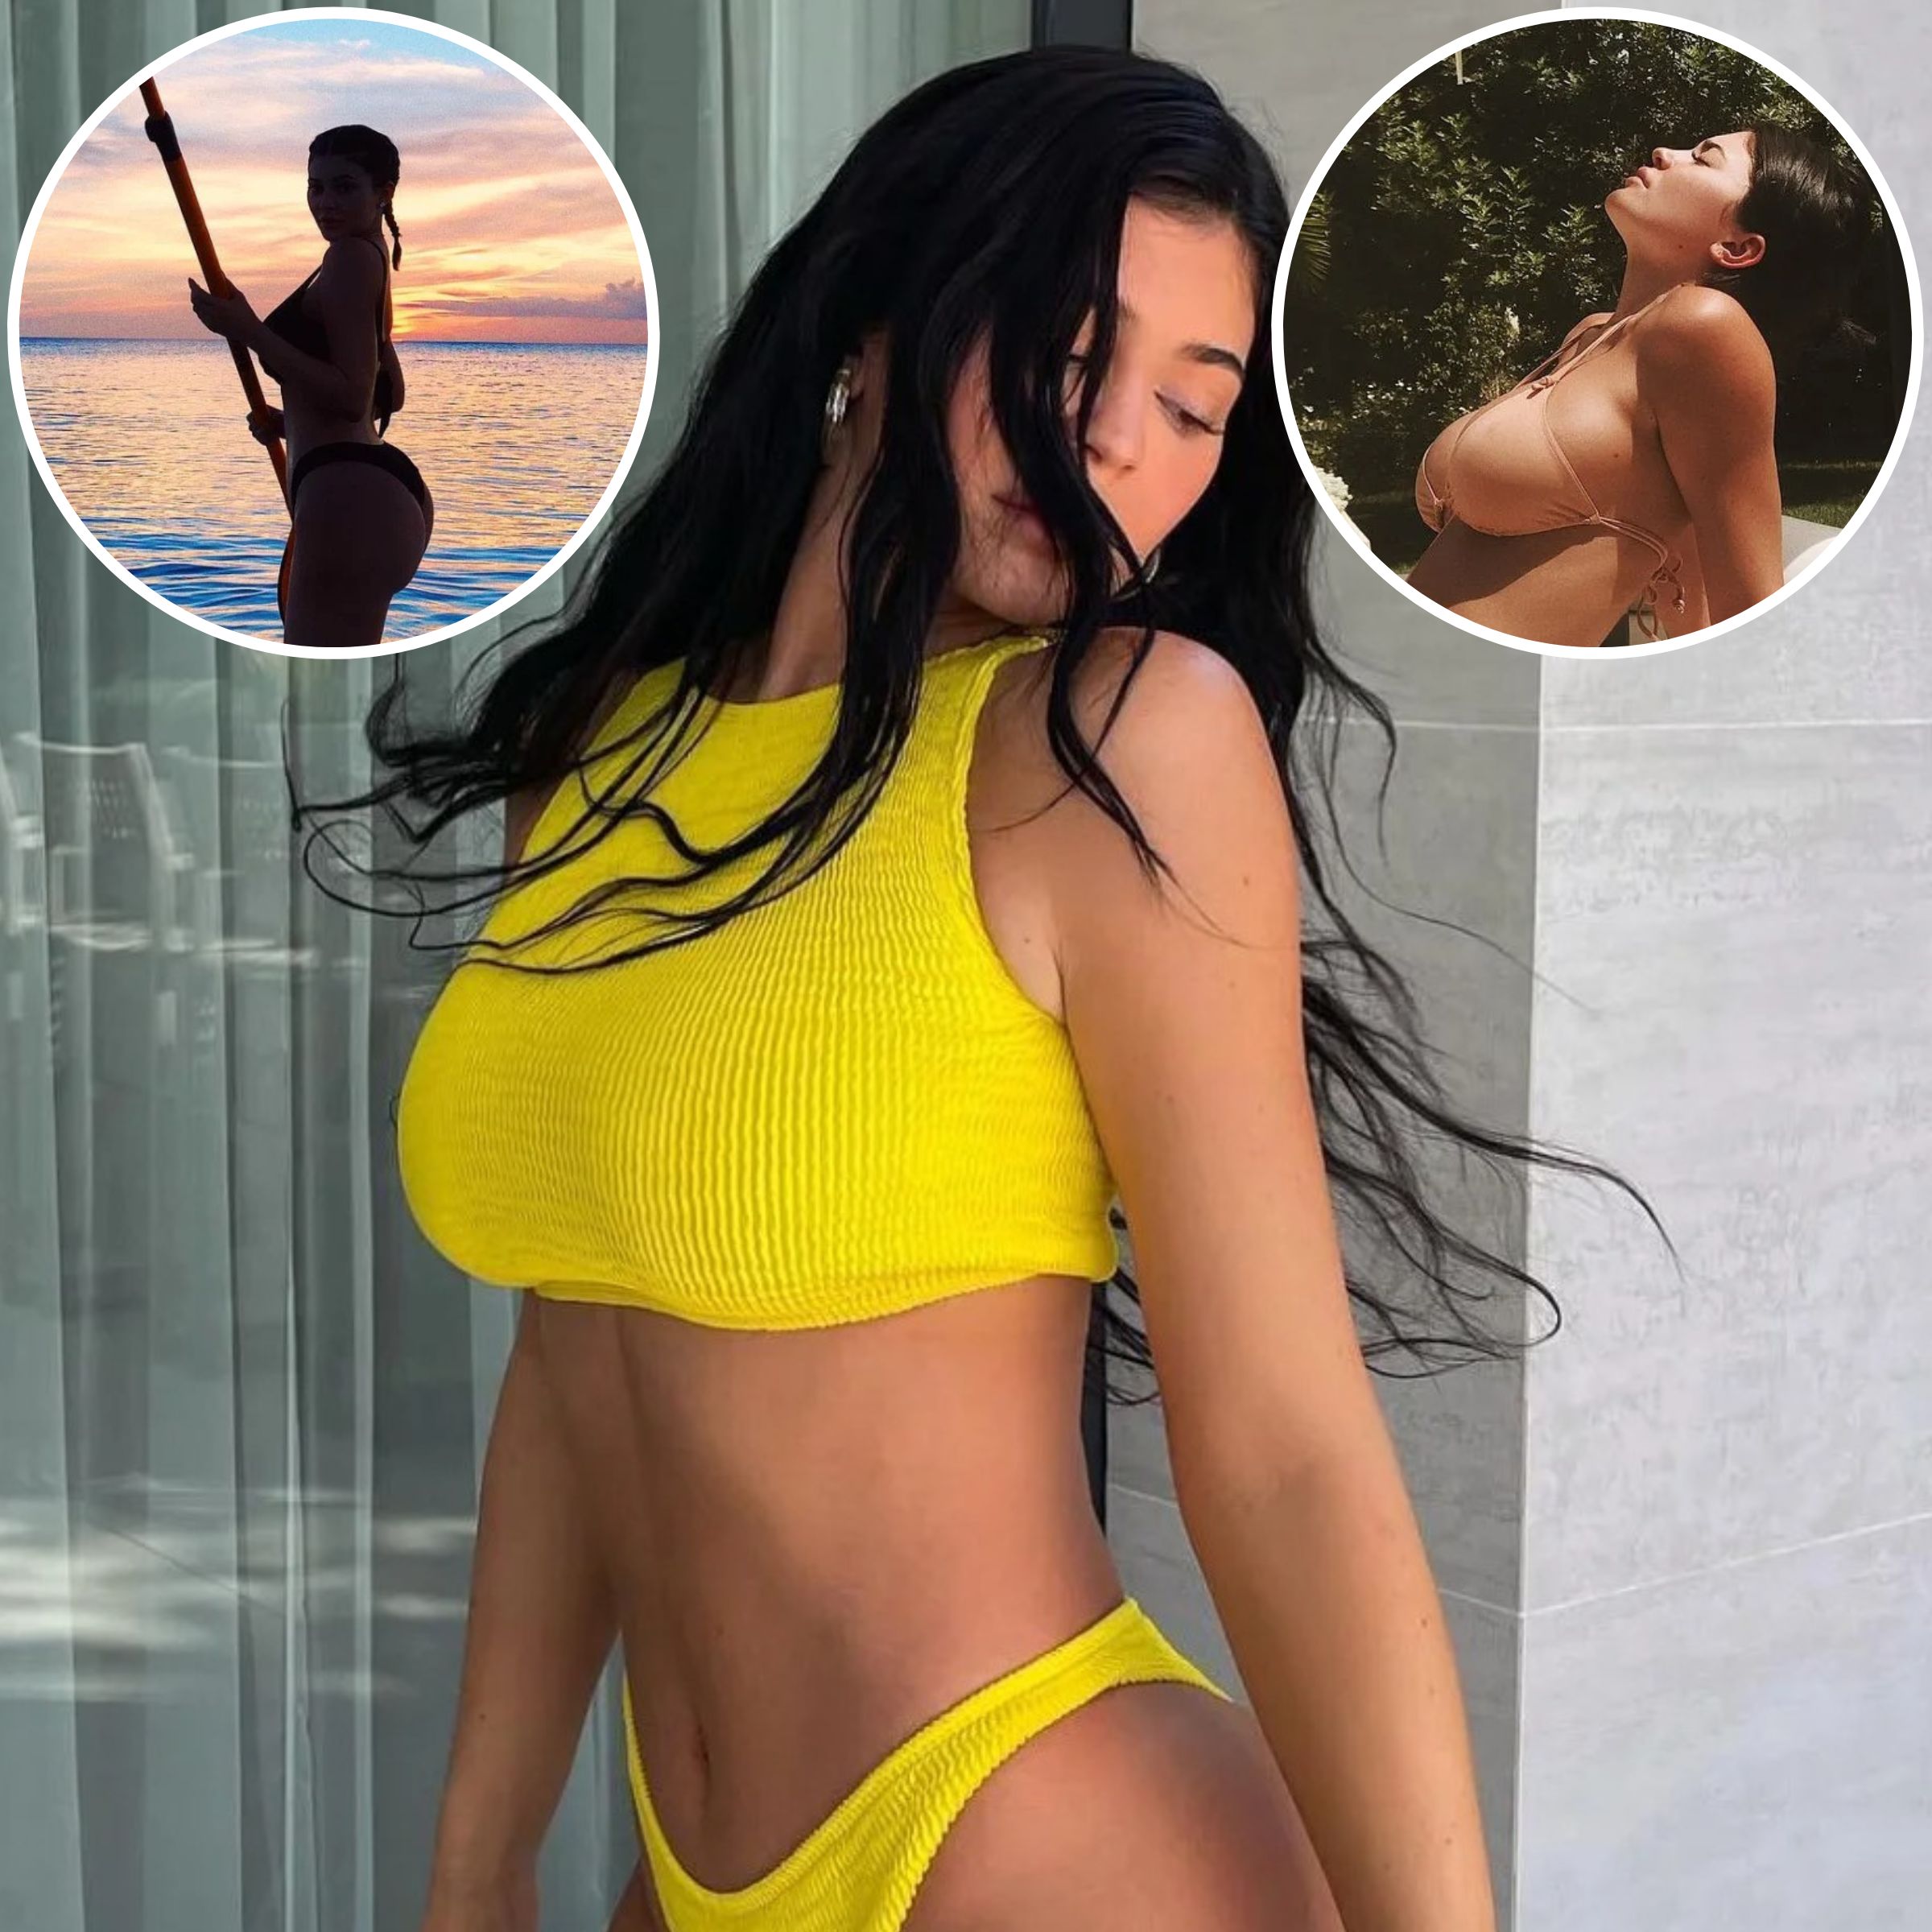 Kylie Jenner Bikini Photos Her Sexiest